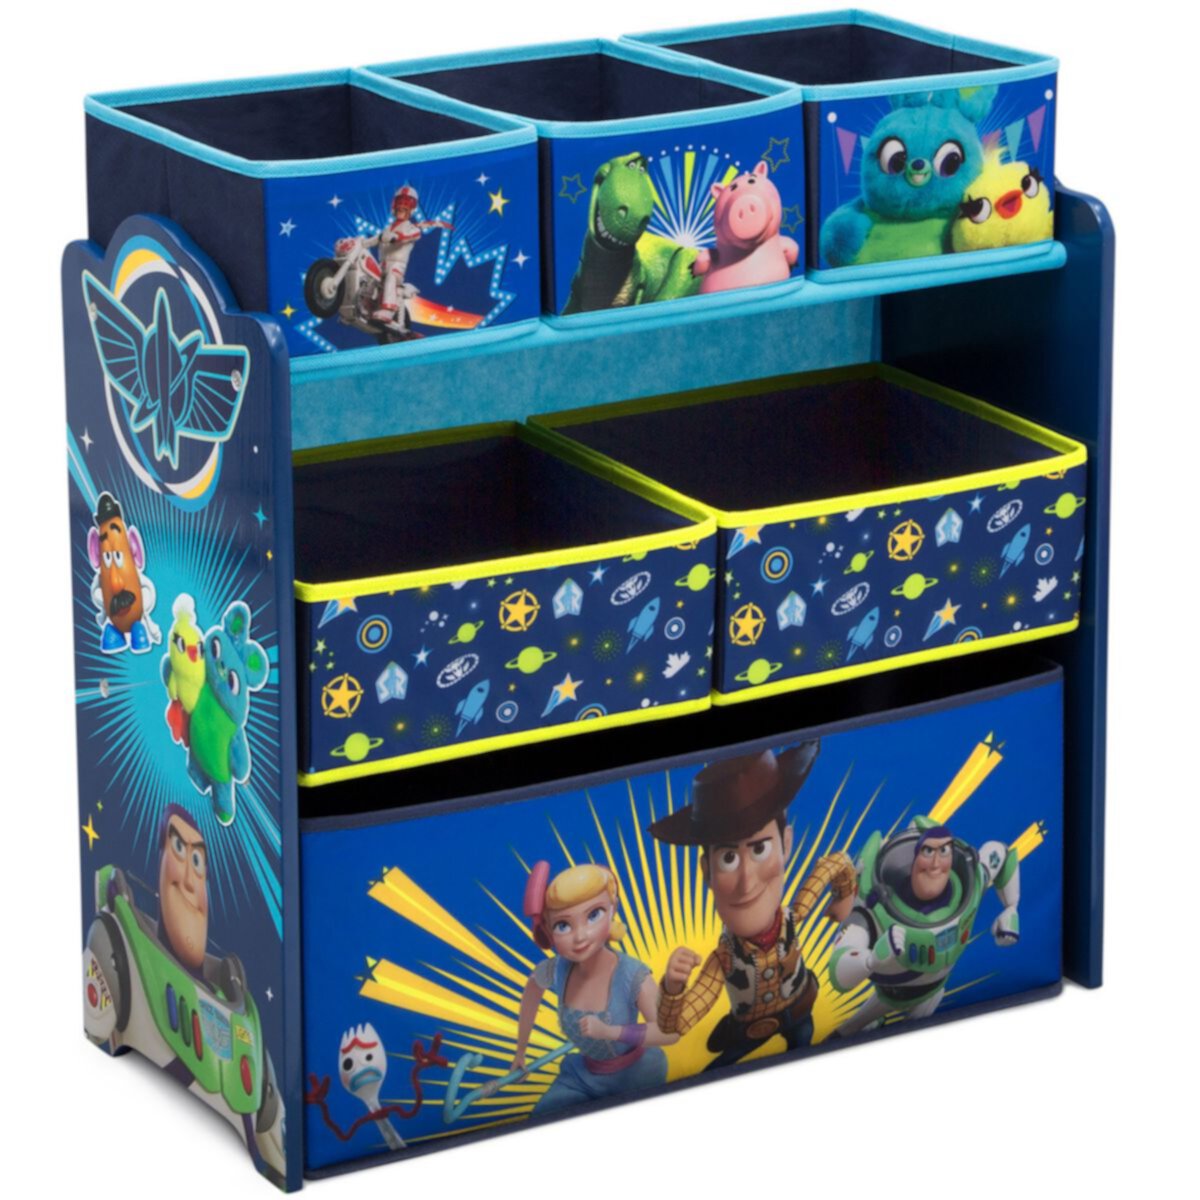 Органайзер для игрушек Disney/Pixar's Toy Story 4 от Delta Children Disney